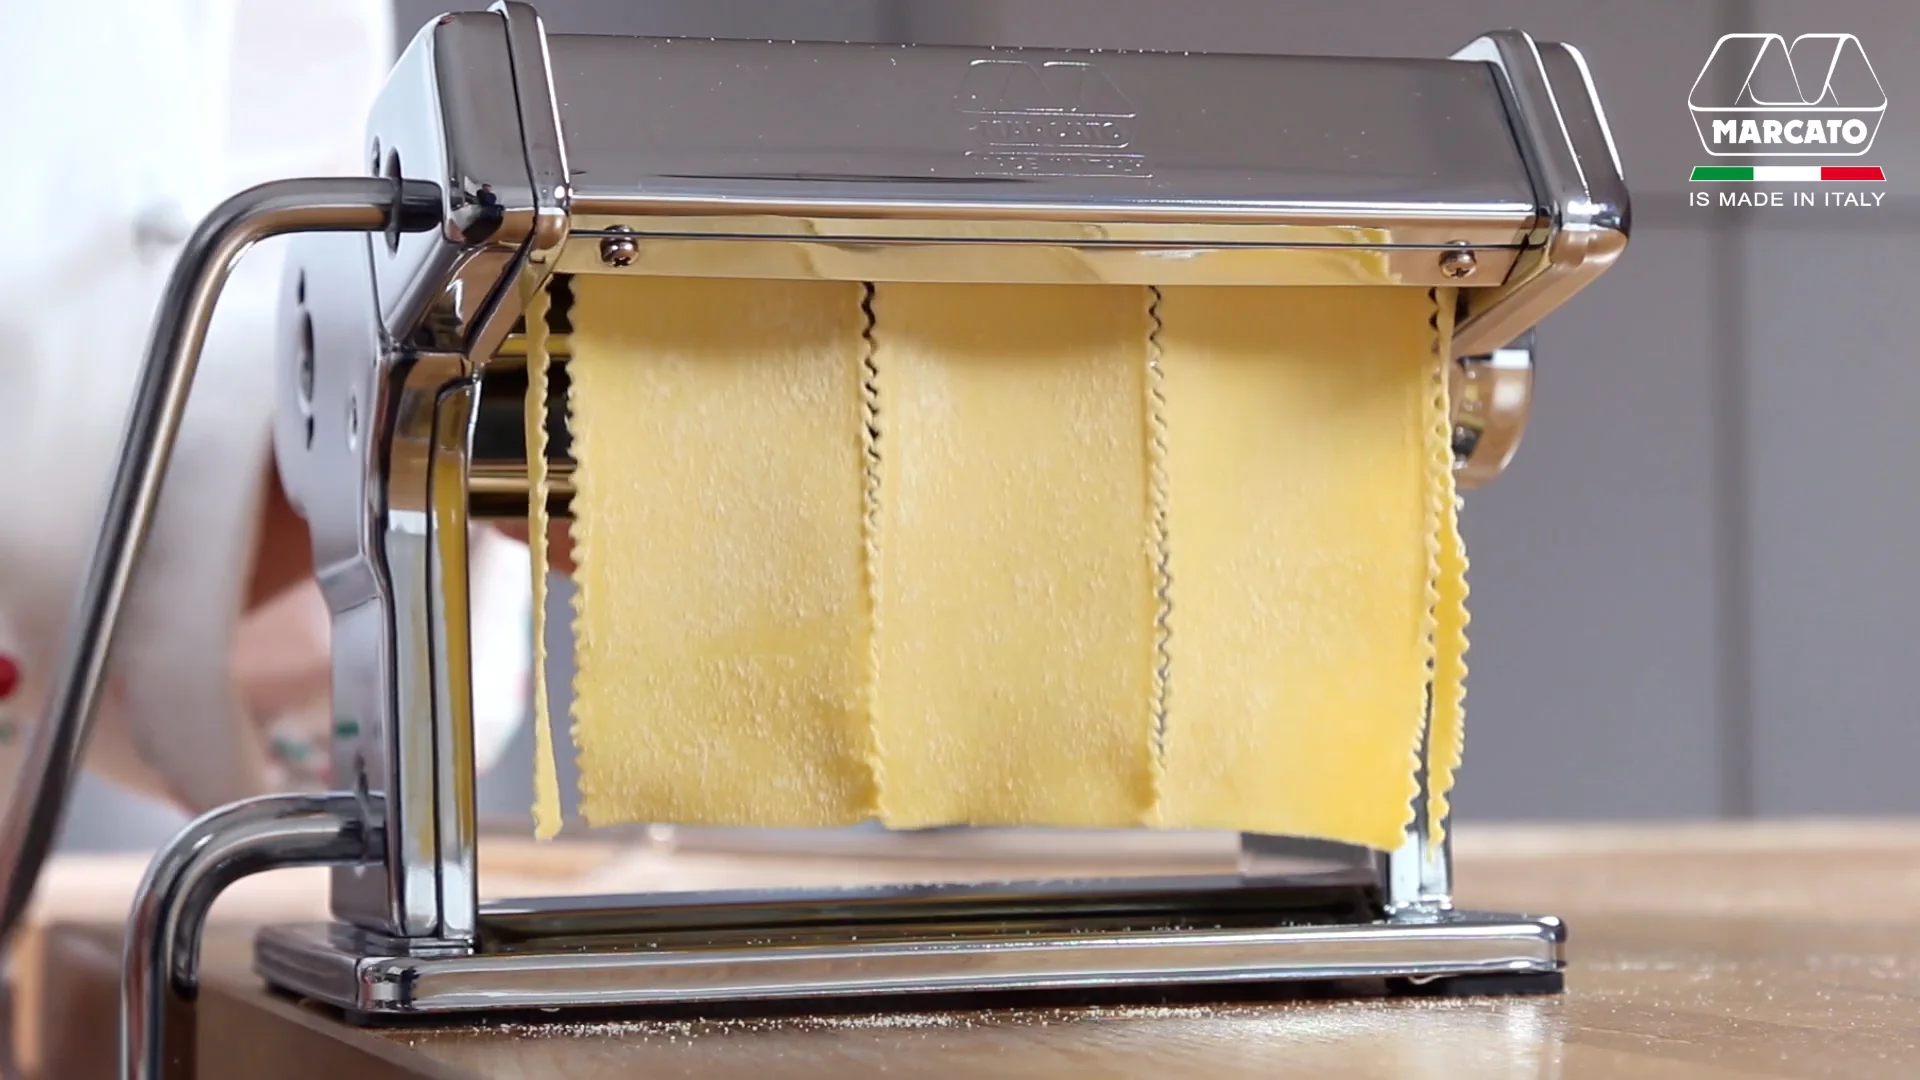 Marcato pappardelle - accessorio pasta per Atlas 150 on Vimeo